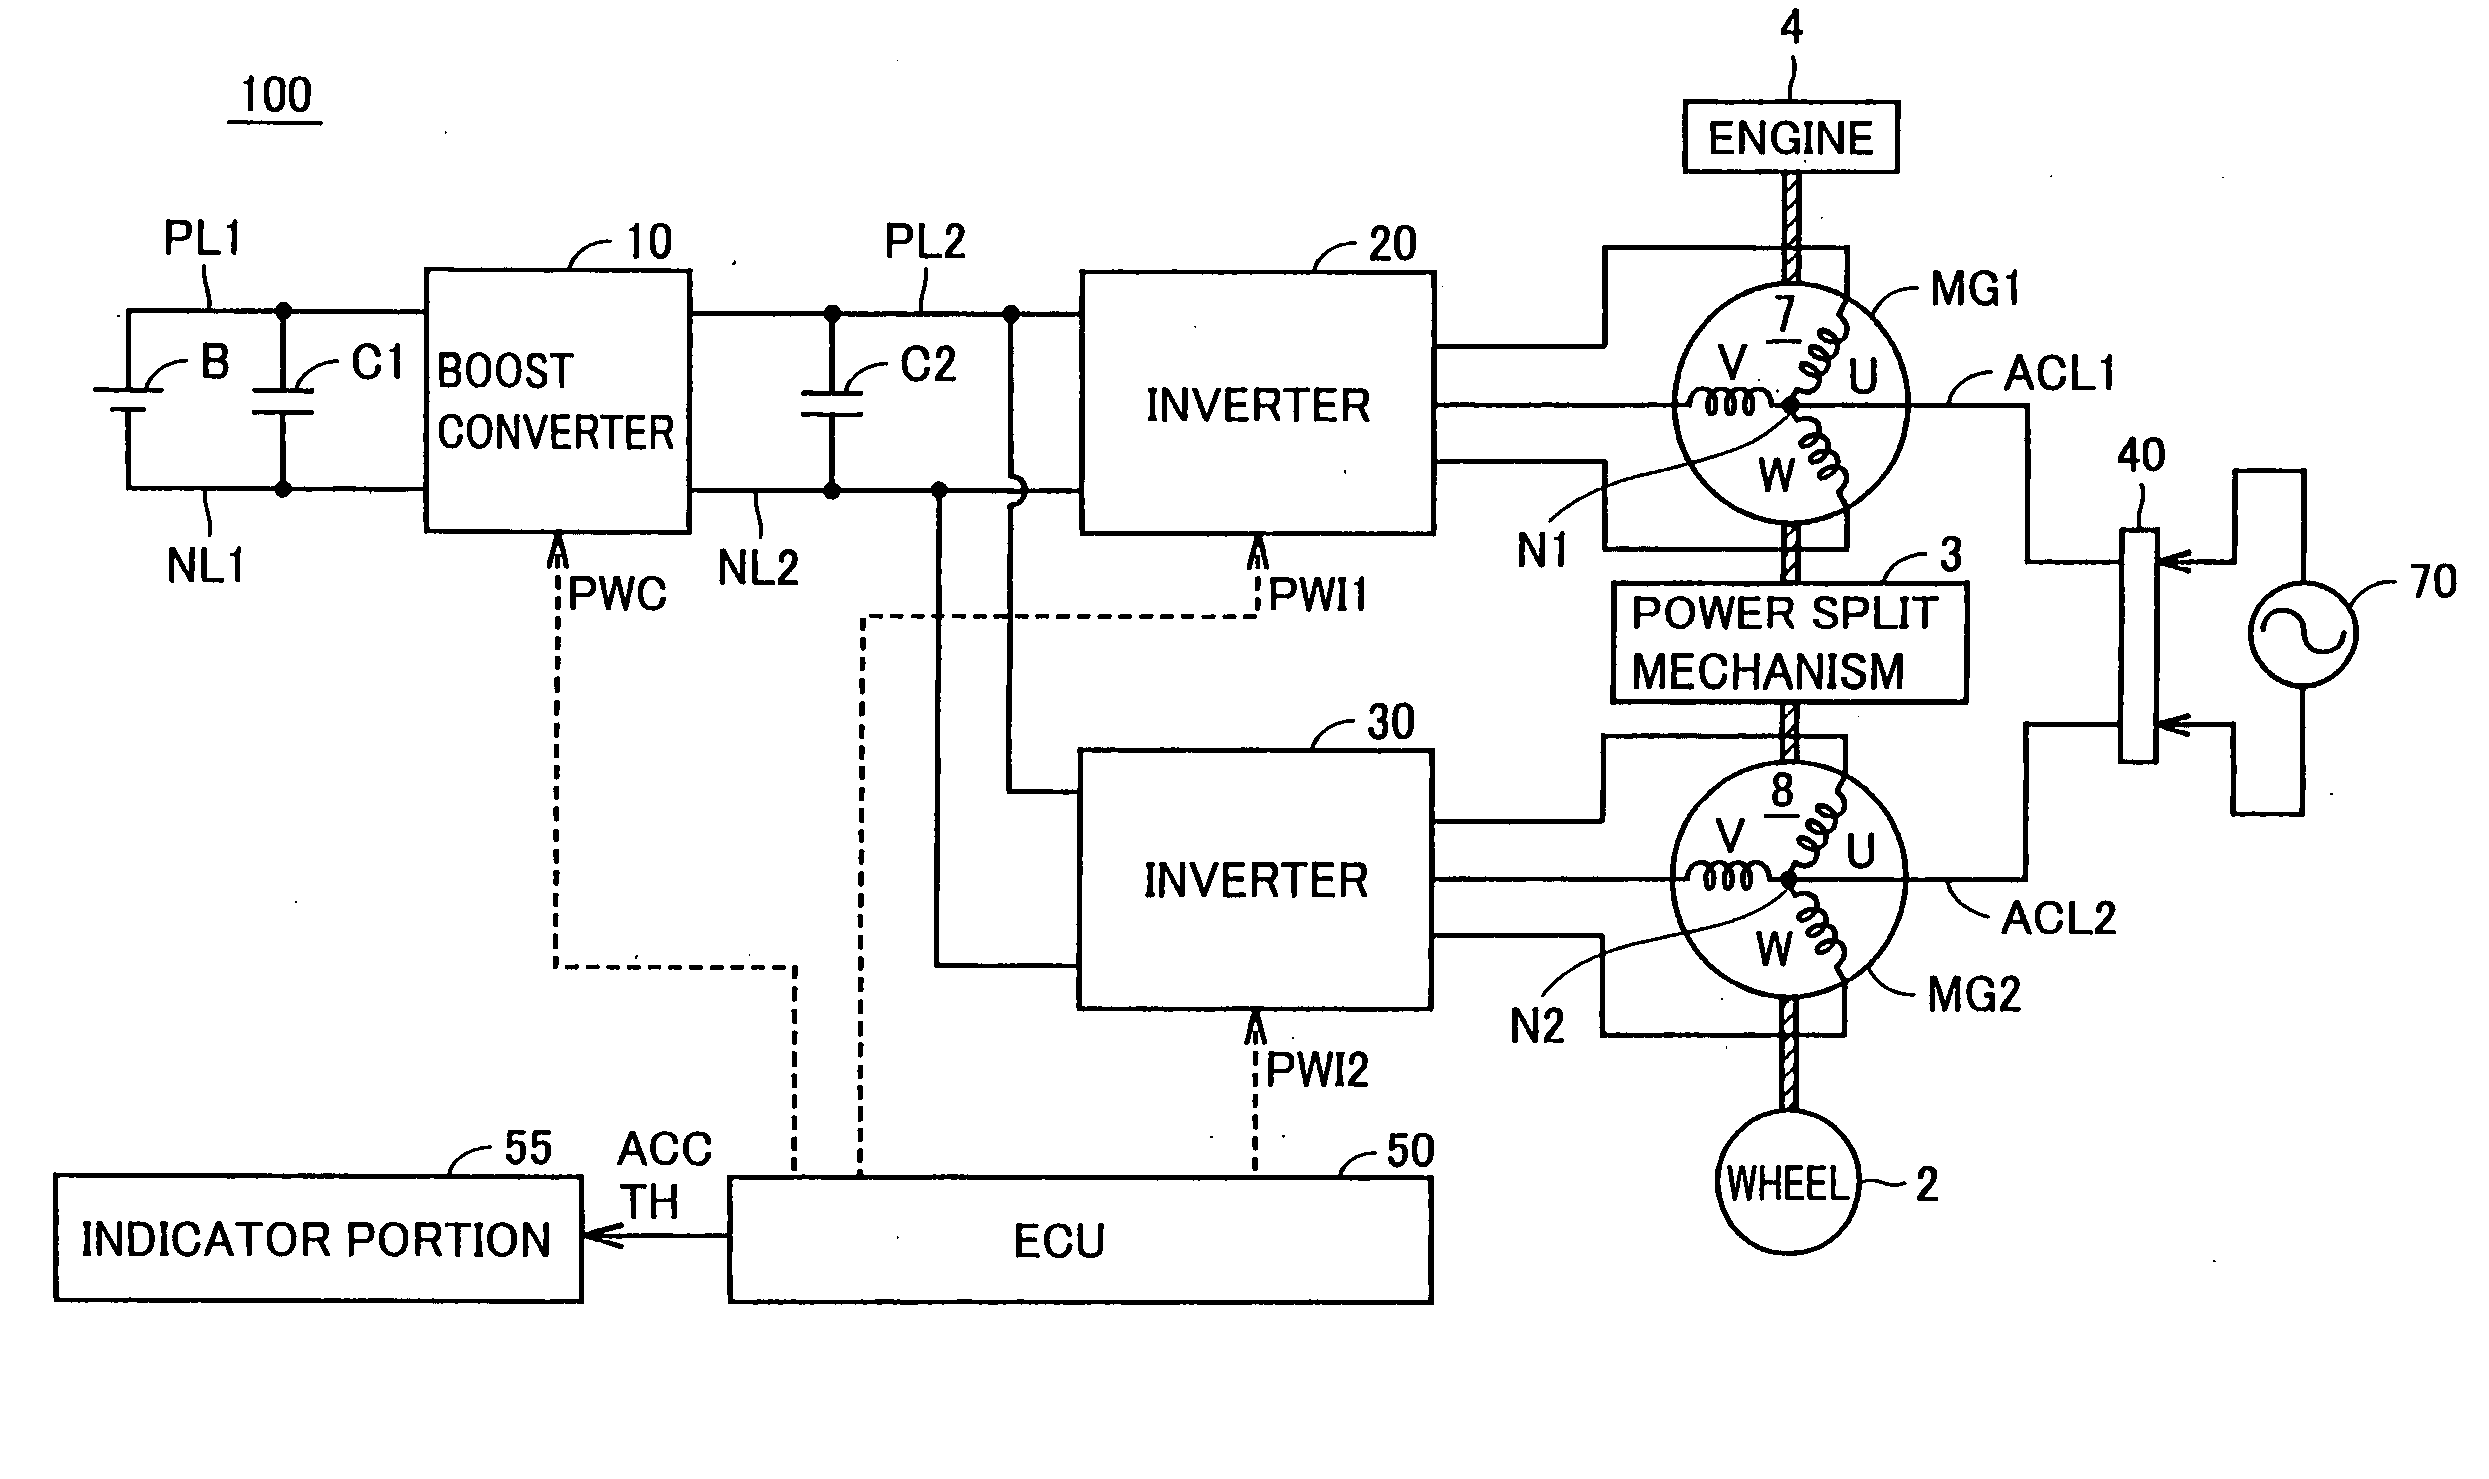 Indicator apparatus for hybrid vehicle, hybrid vehicle, indicating method for hybrid vehicle